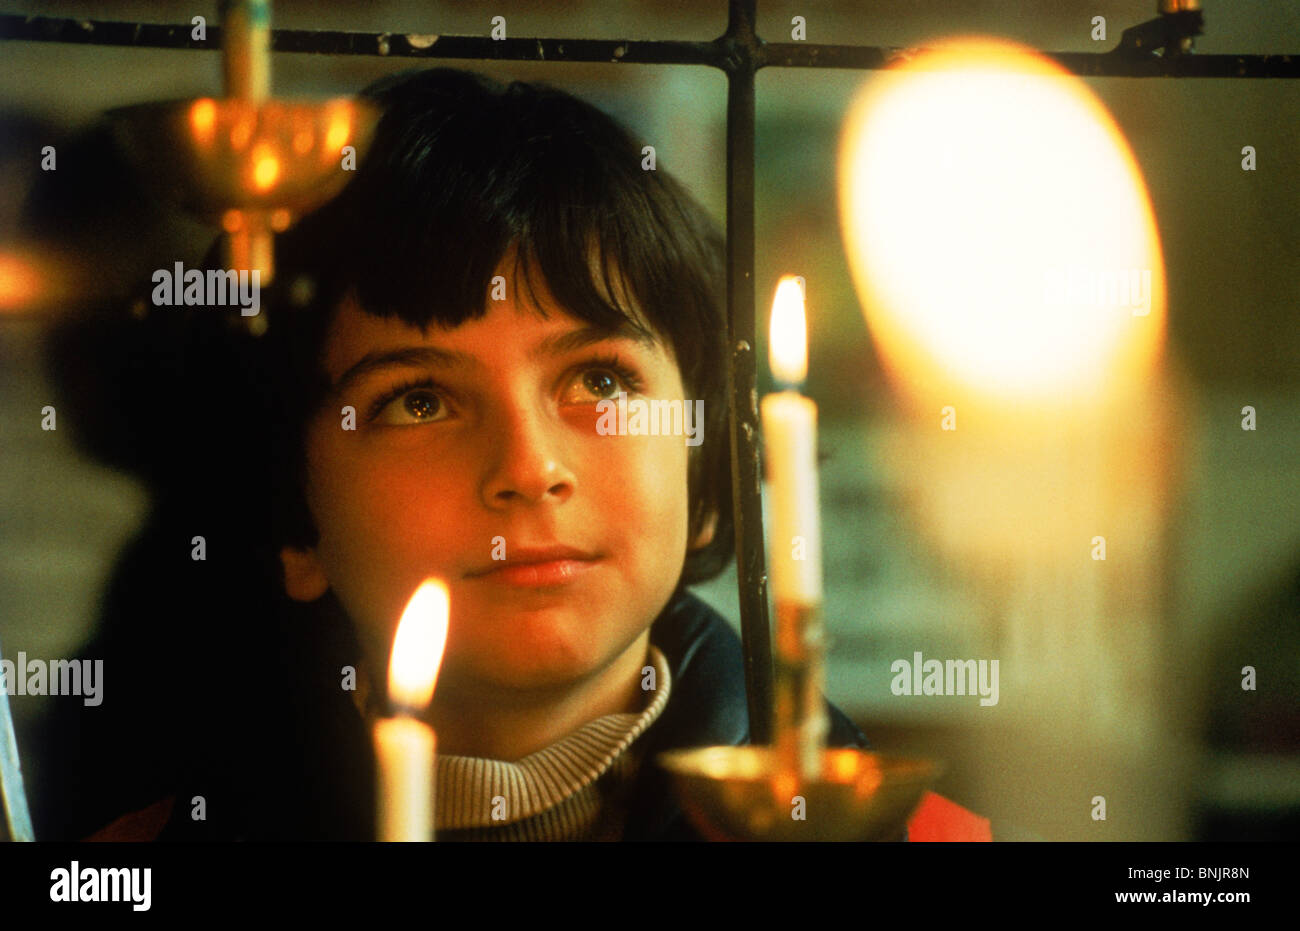 Jeune garçon à regarder la lumière des bougies au cours de l'église Banque D'Images